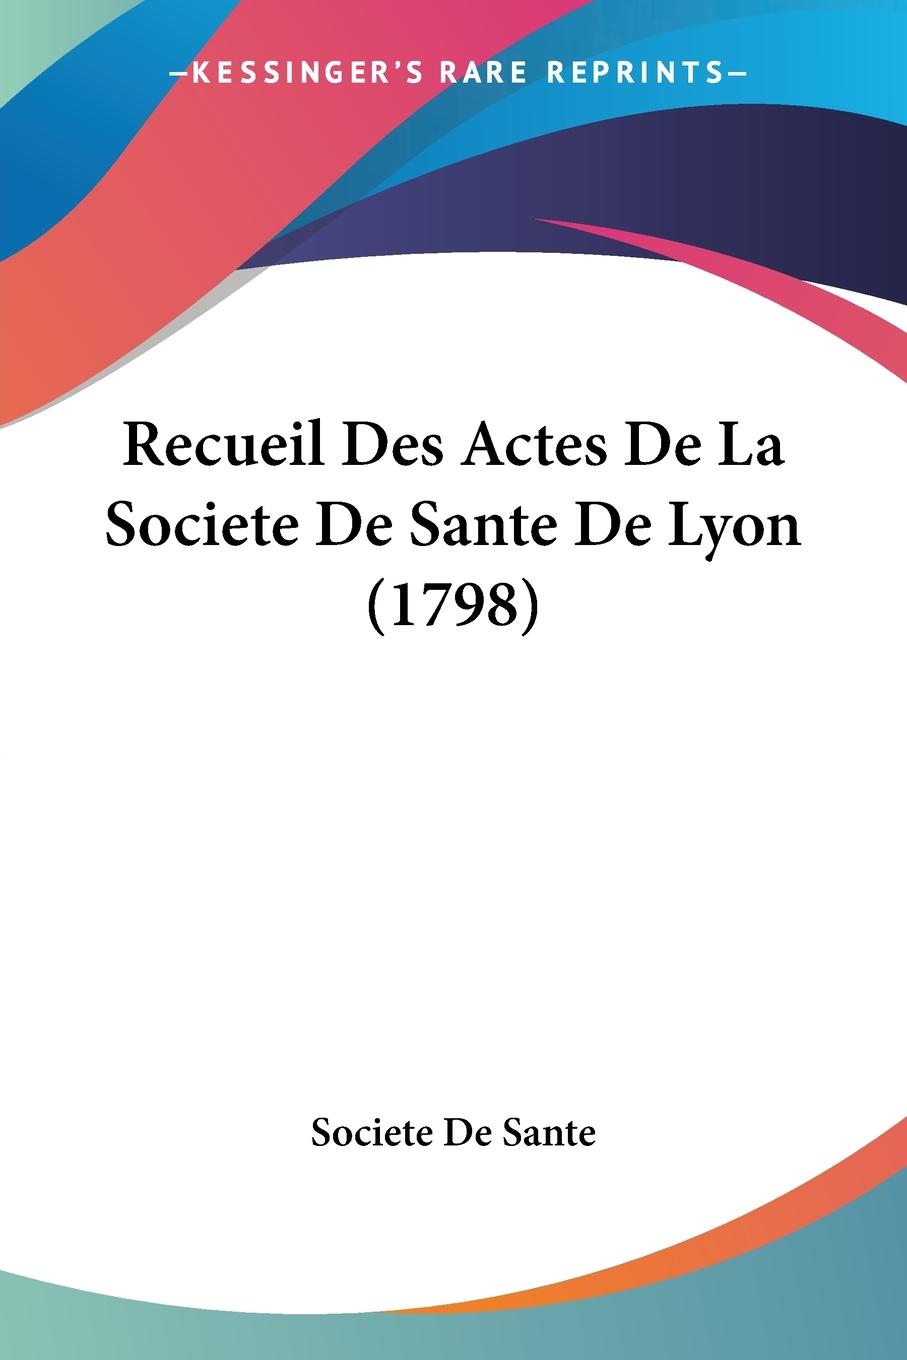 Recueil Des Actes De La Societe De Sante De Lyon (1798) - Societe De Sante